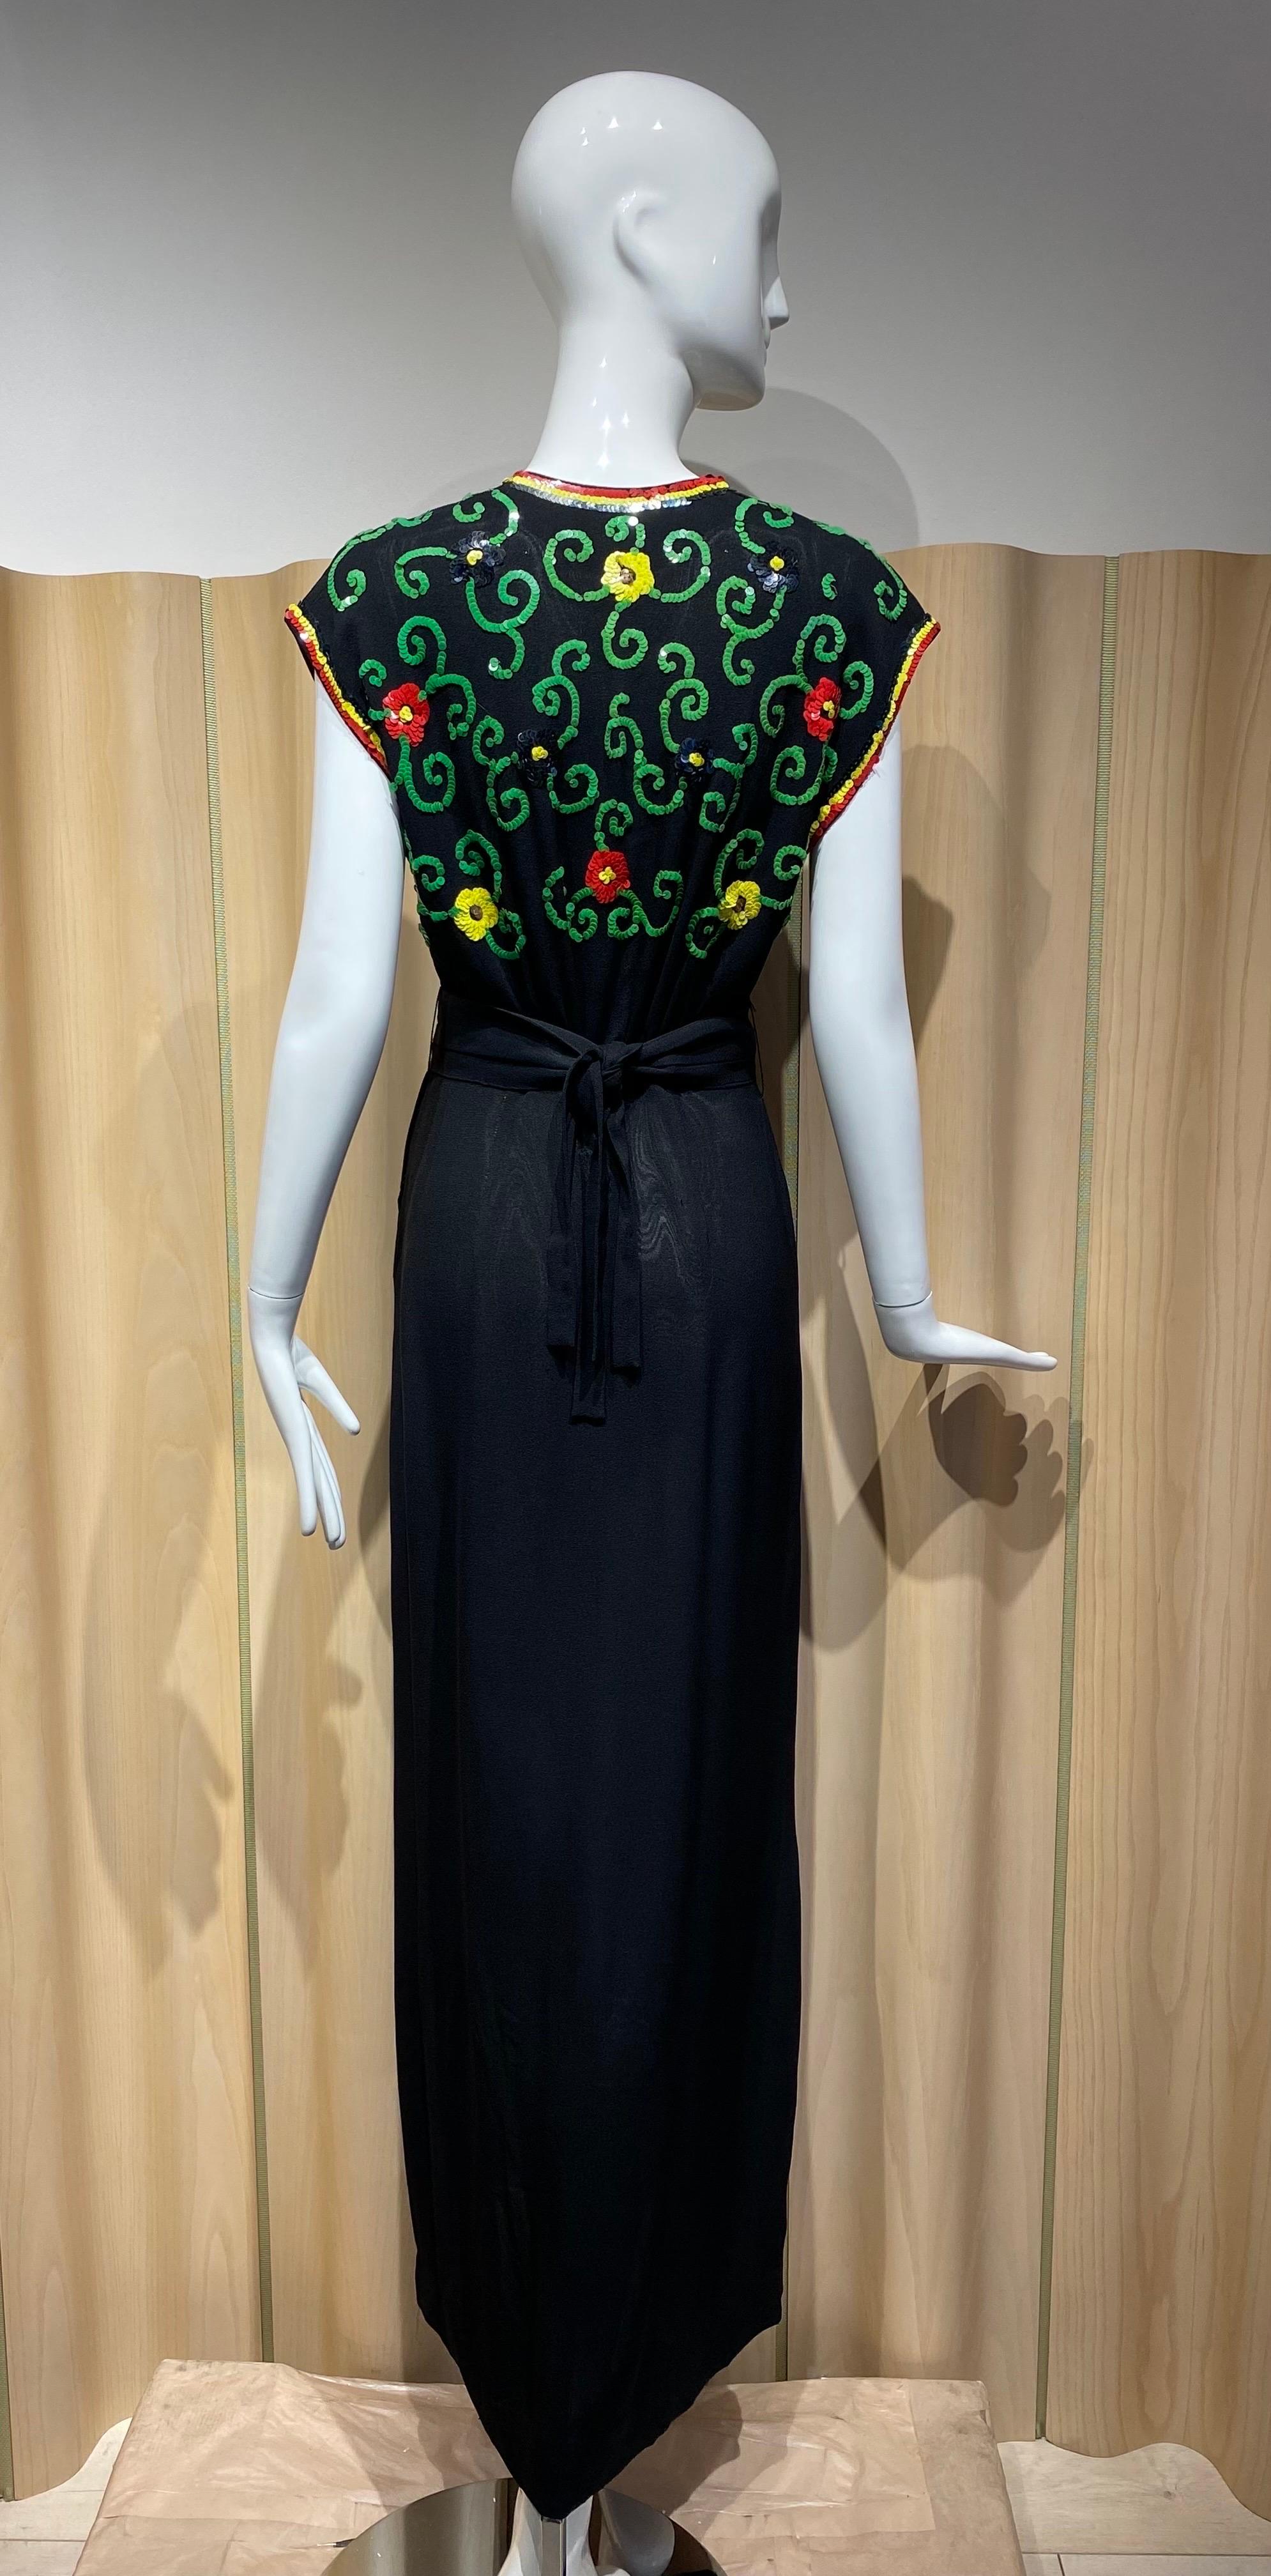 Robe en crêpe noir des années 1940 avec paillettes perlées vertes et jaunes Paisley.
La robe est livrée avec une ceinture.
Taille M